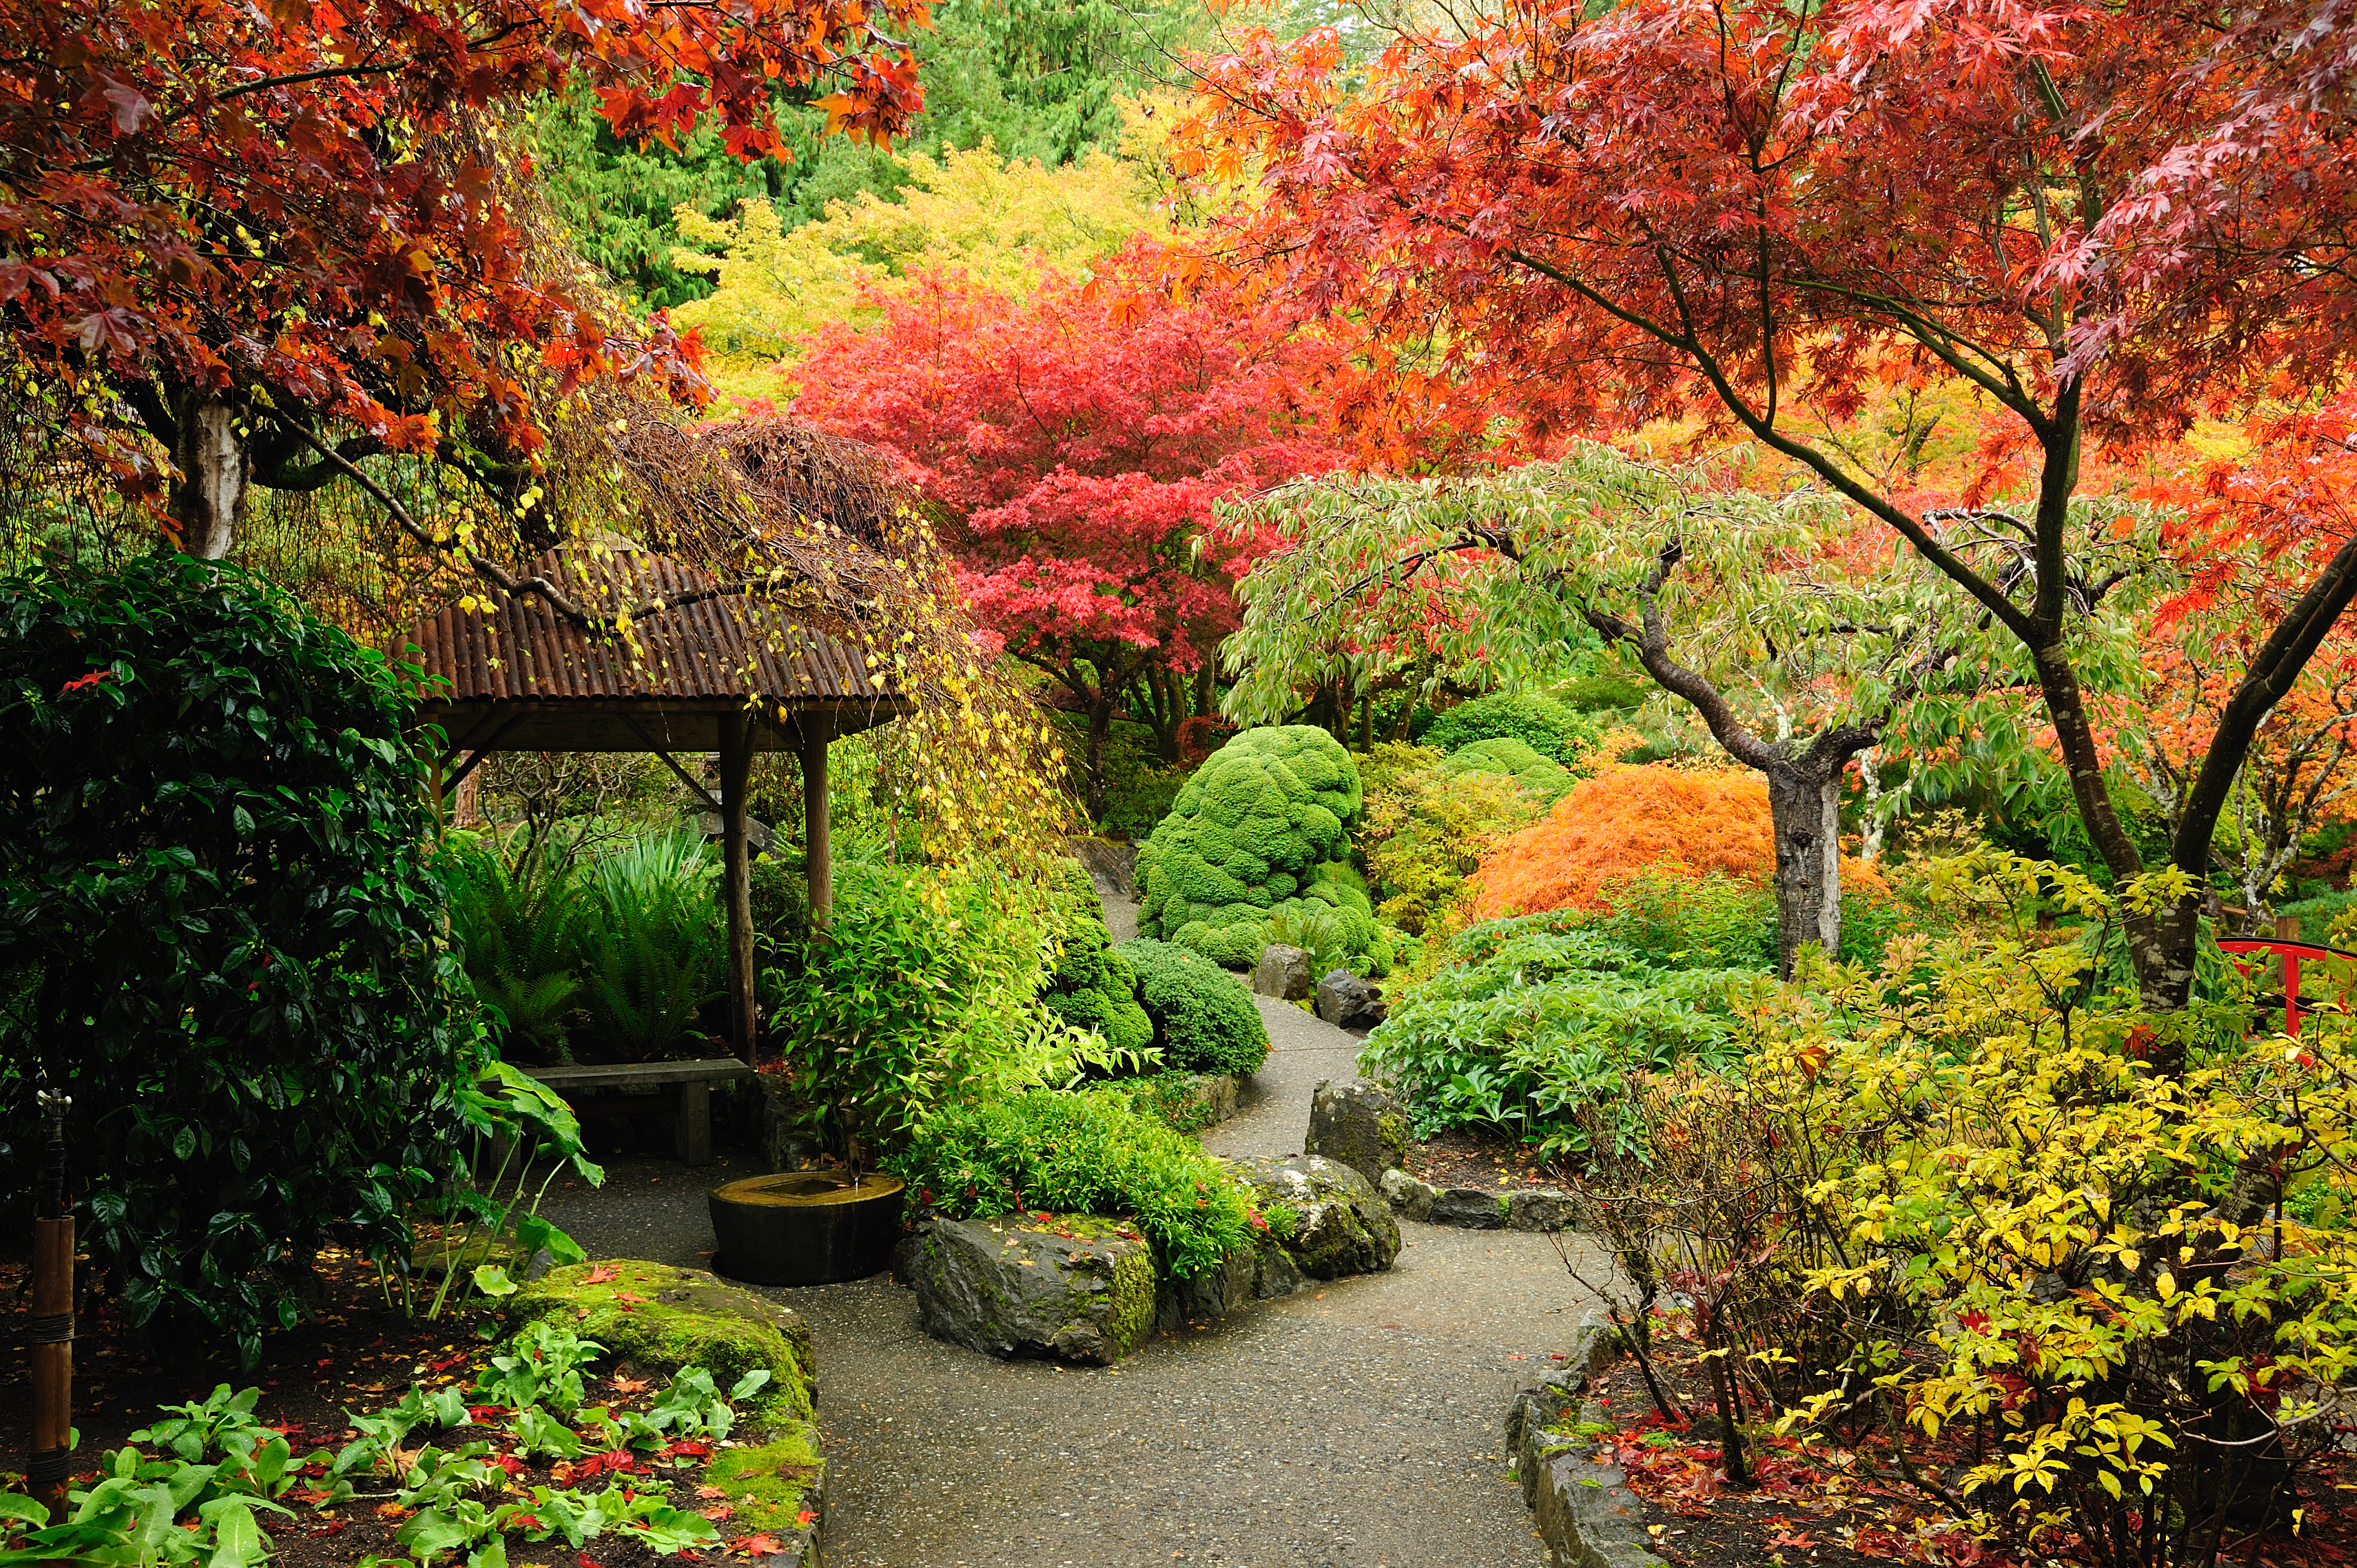 An image of an autumnal garden